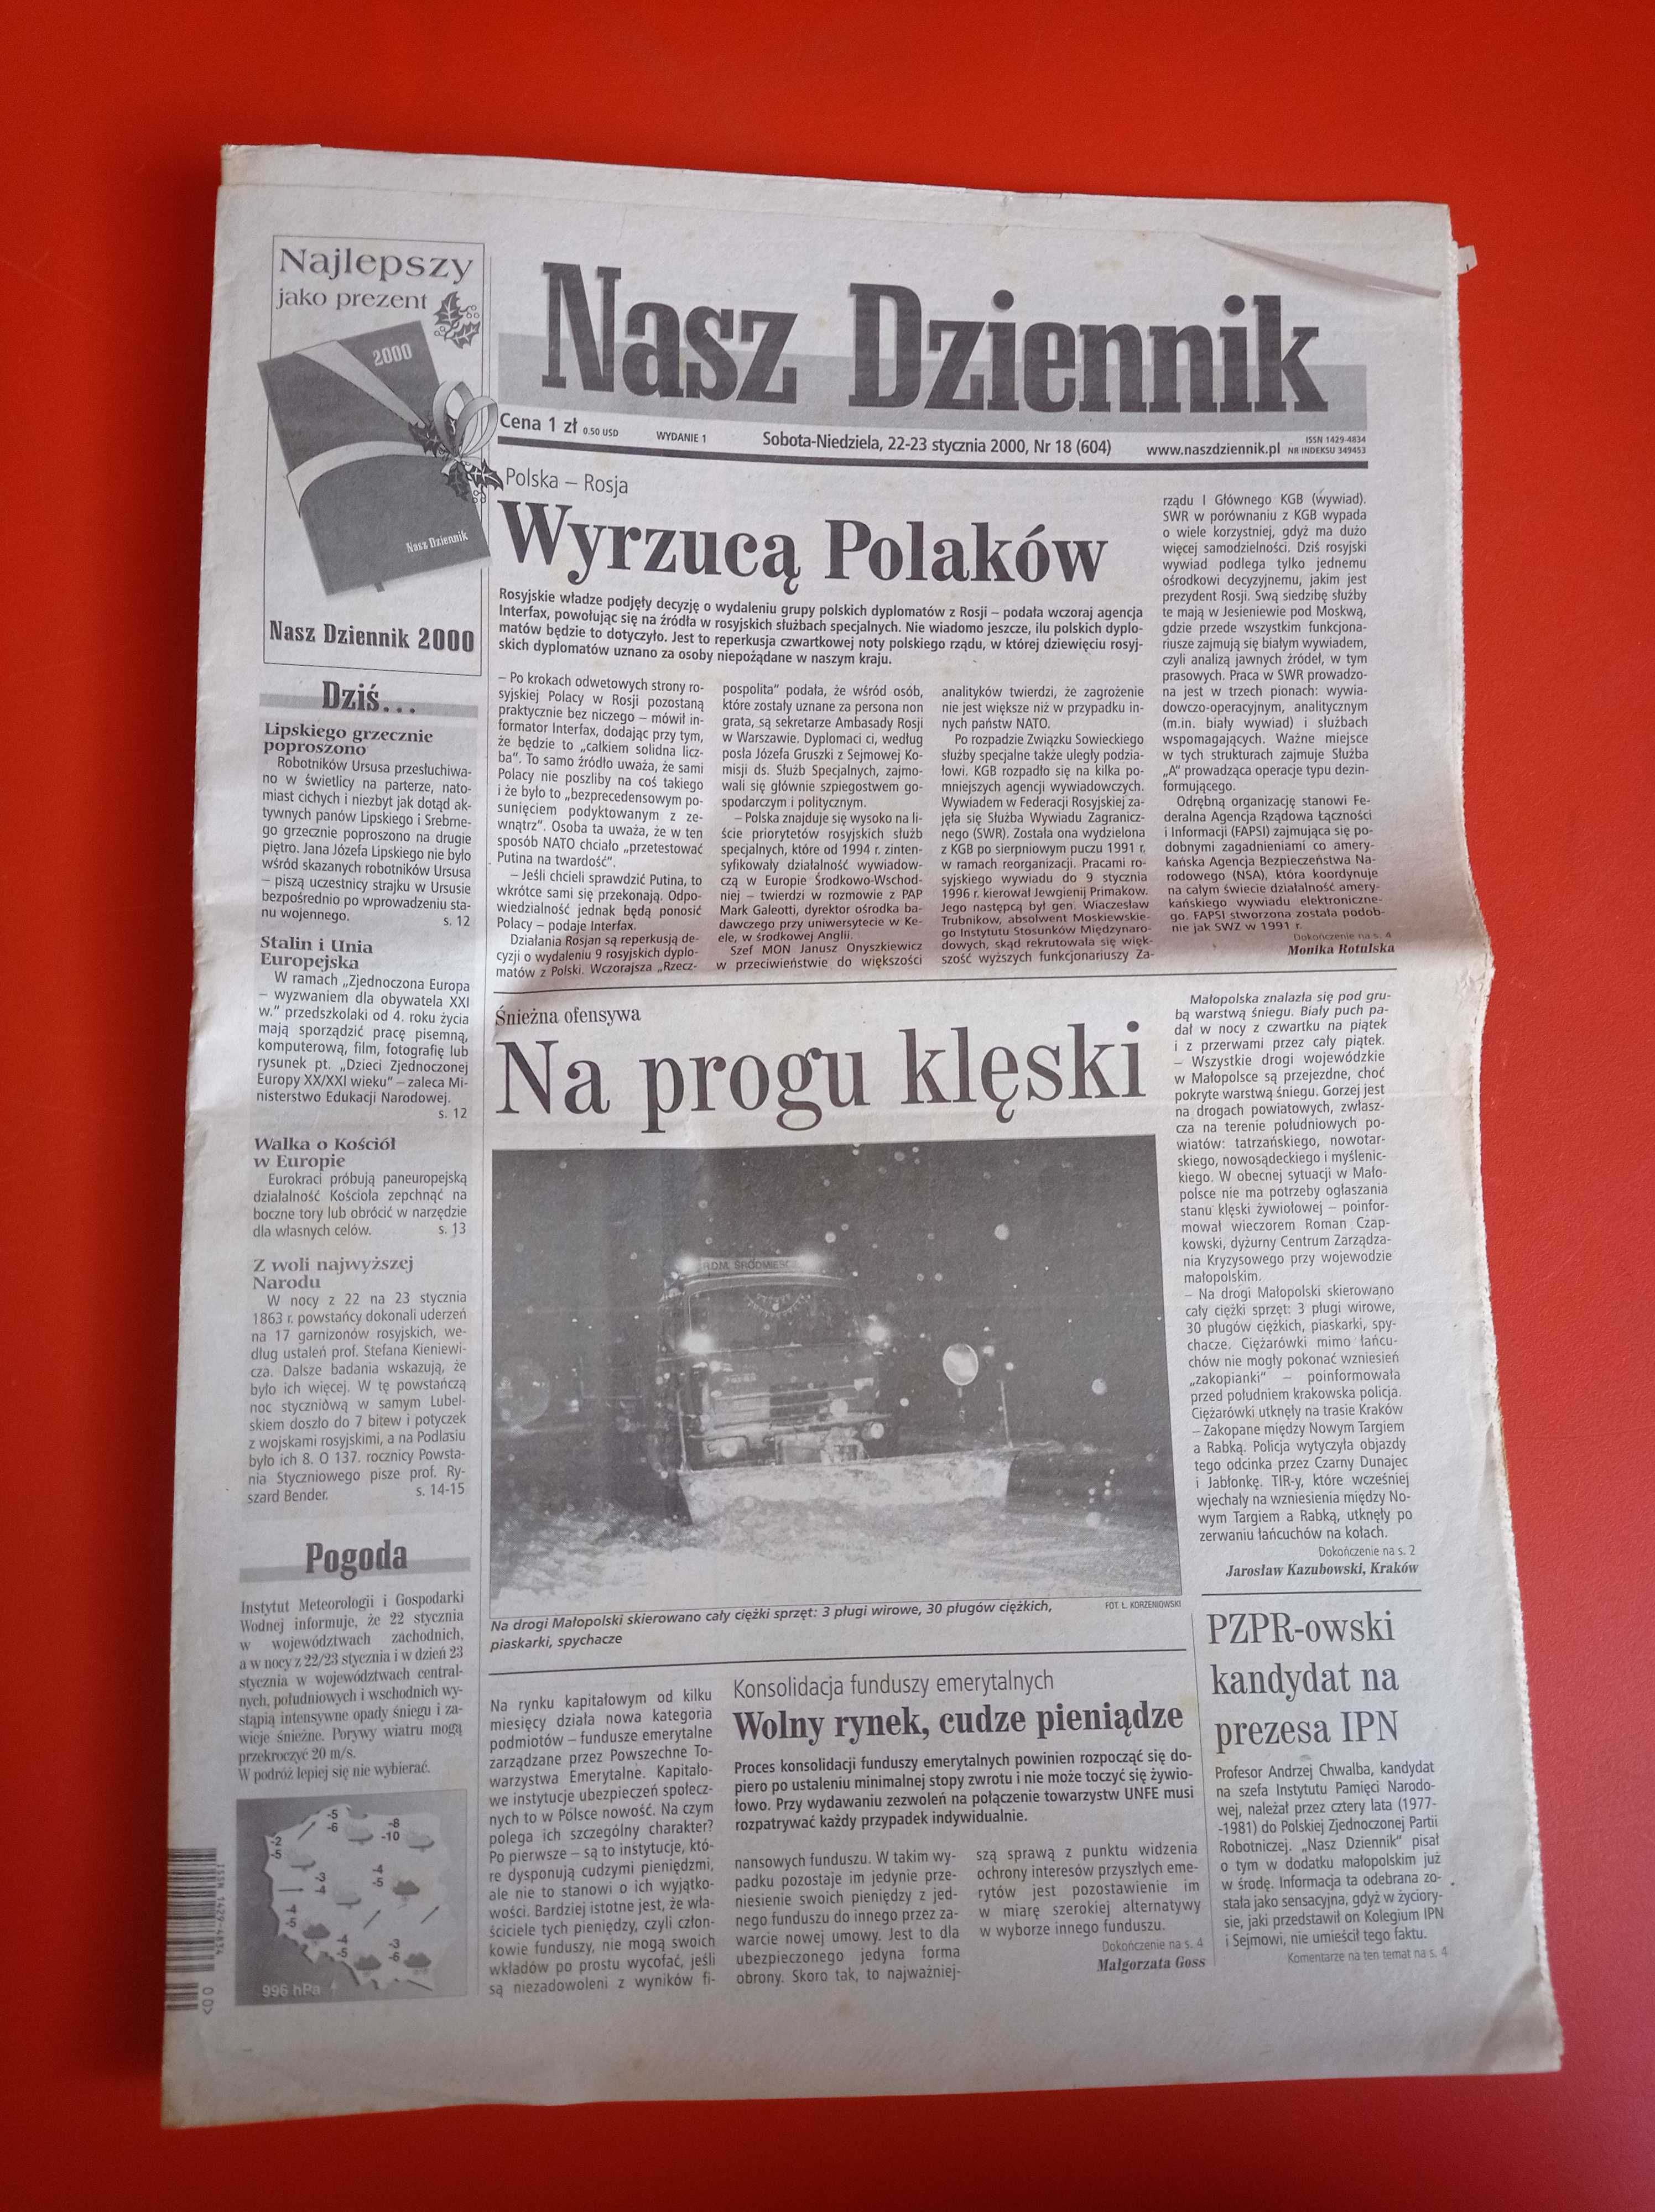 Nasz Dziennik, nr 18/2000, 22-23 stycznia 2000